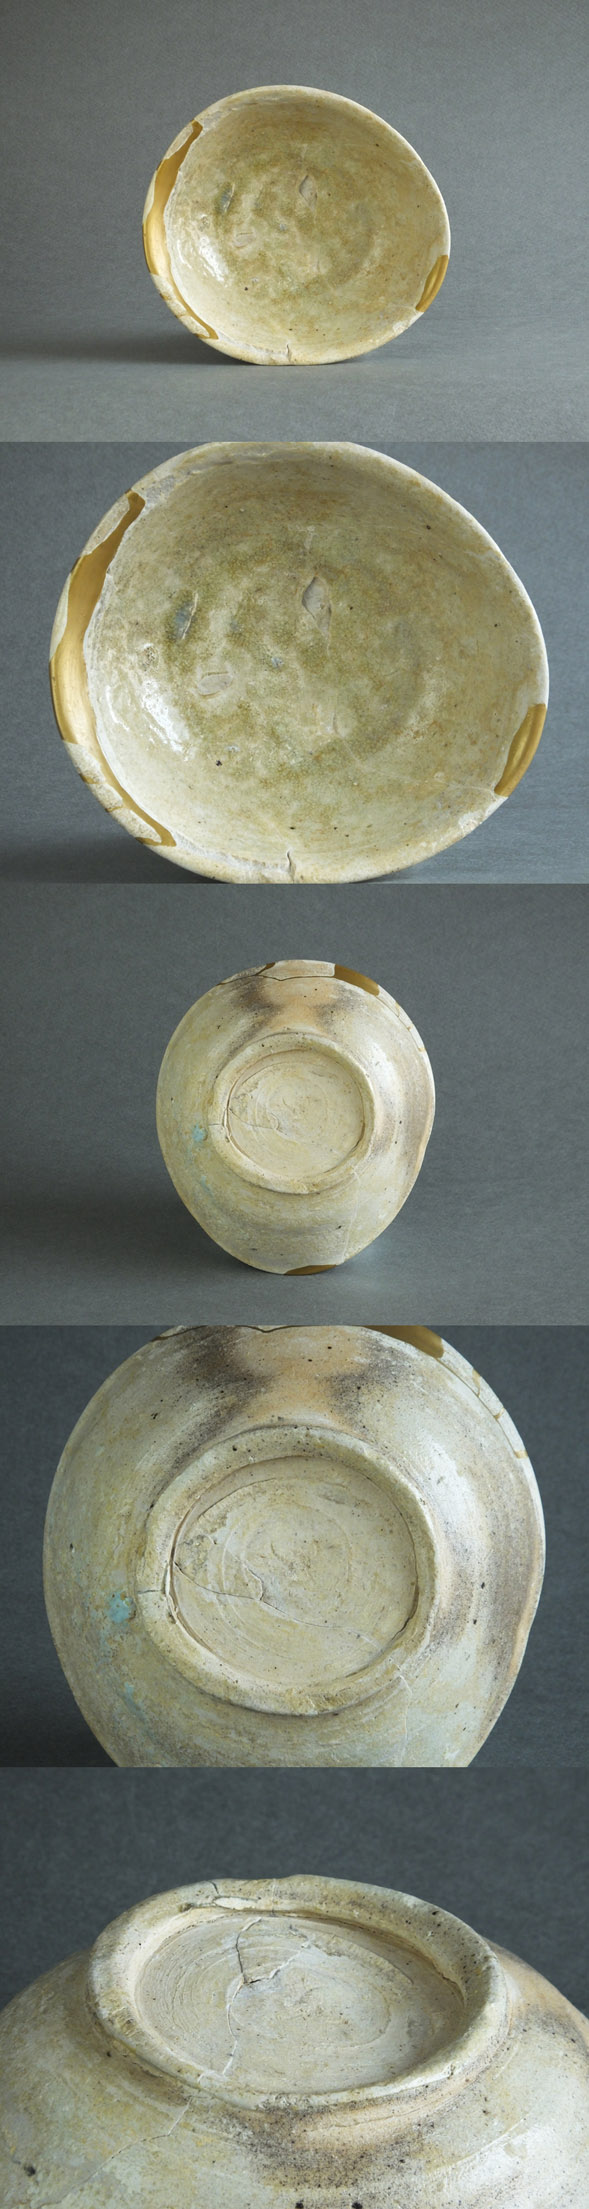 平安時代 猿投 美濃白瓷 小碗 呼継 陶片 窯跡 発掘 出土 骨董 古美術